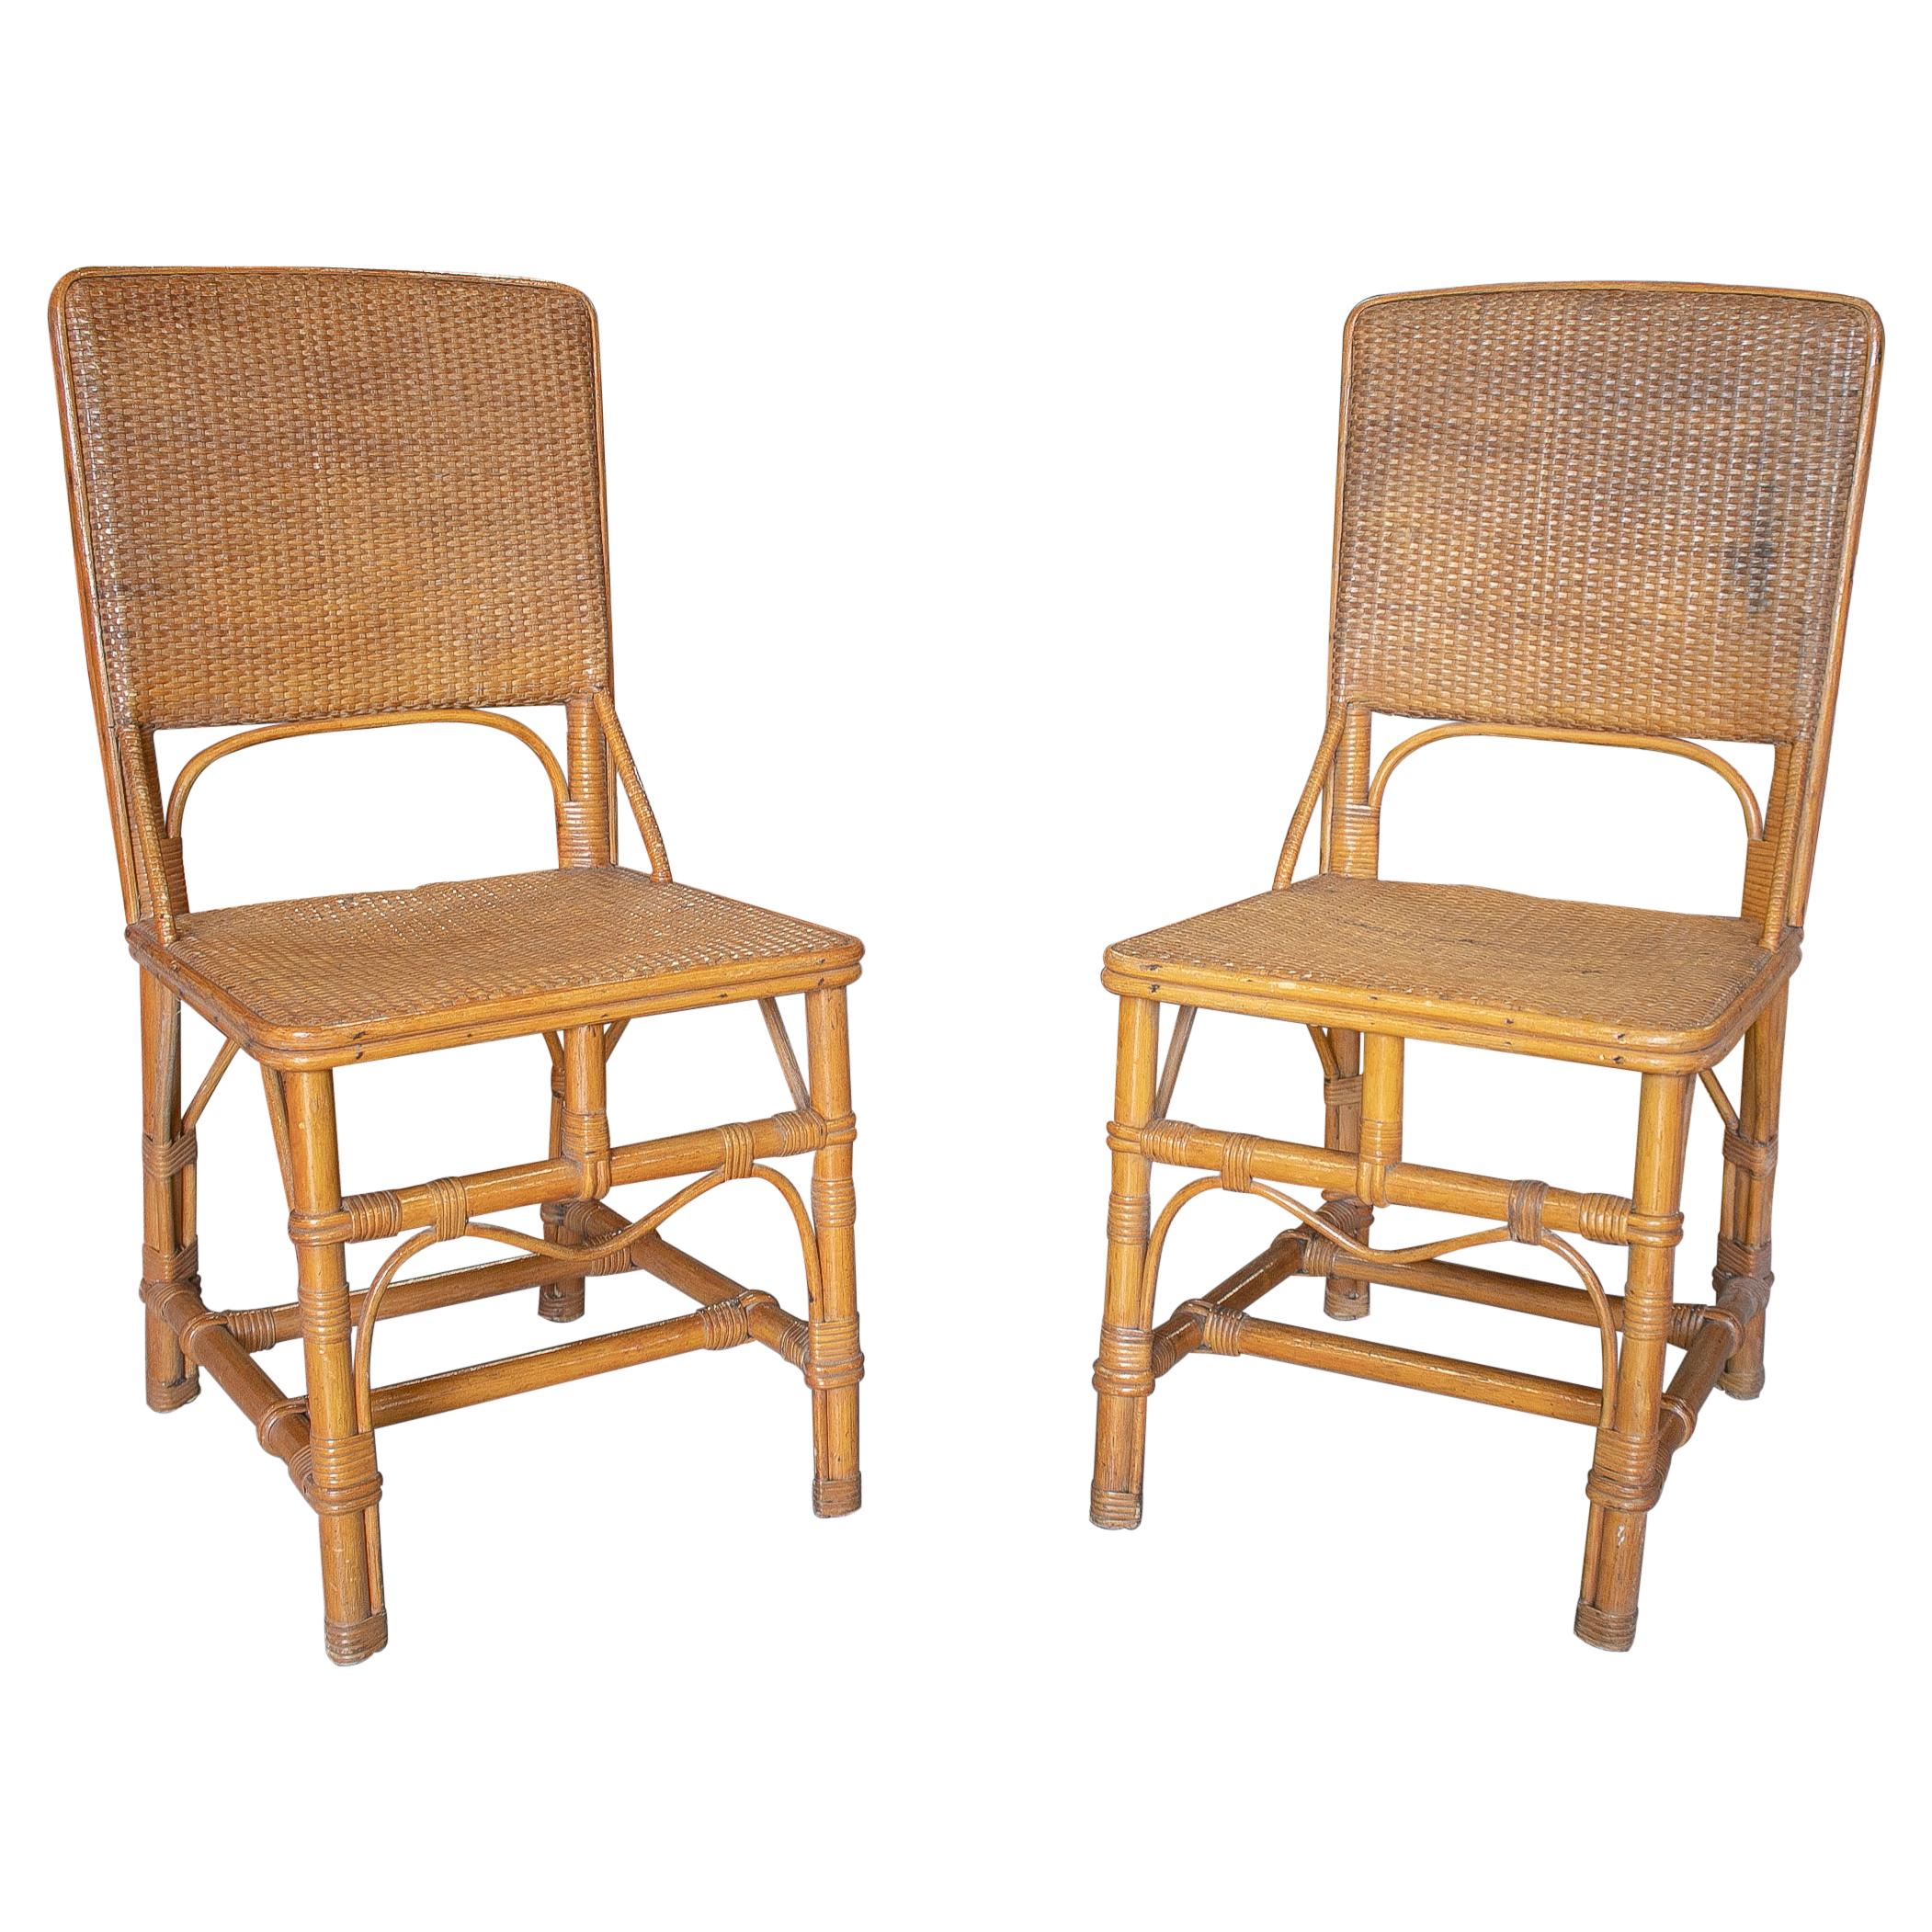 Paire de chaises espagnoles des années 1970 en bambou et osier tissé à la main